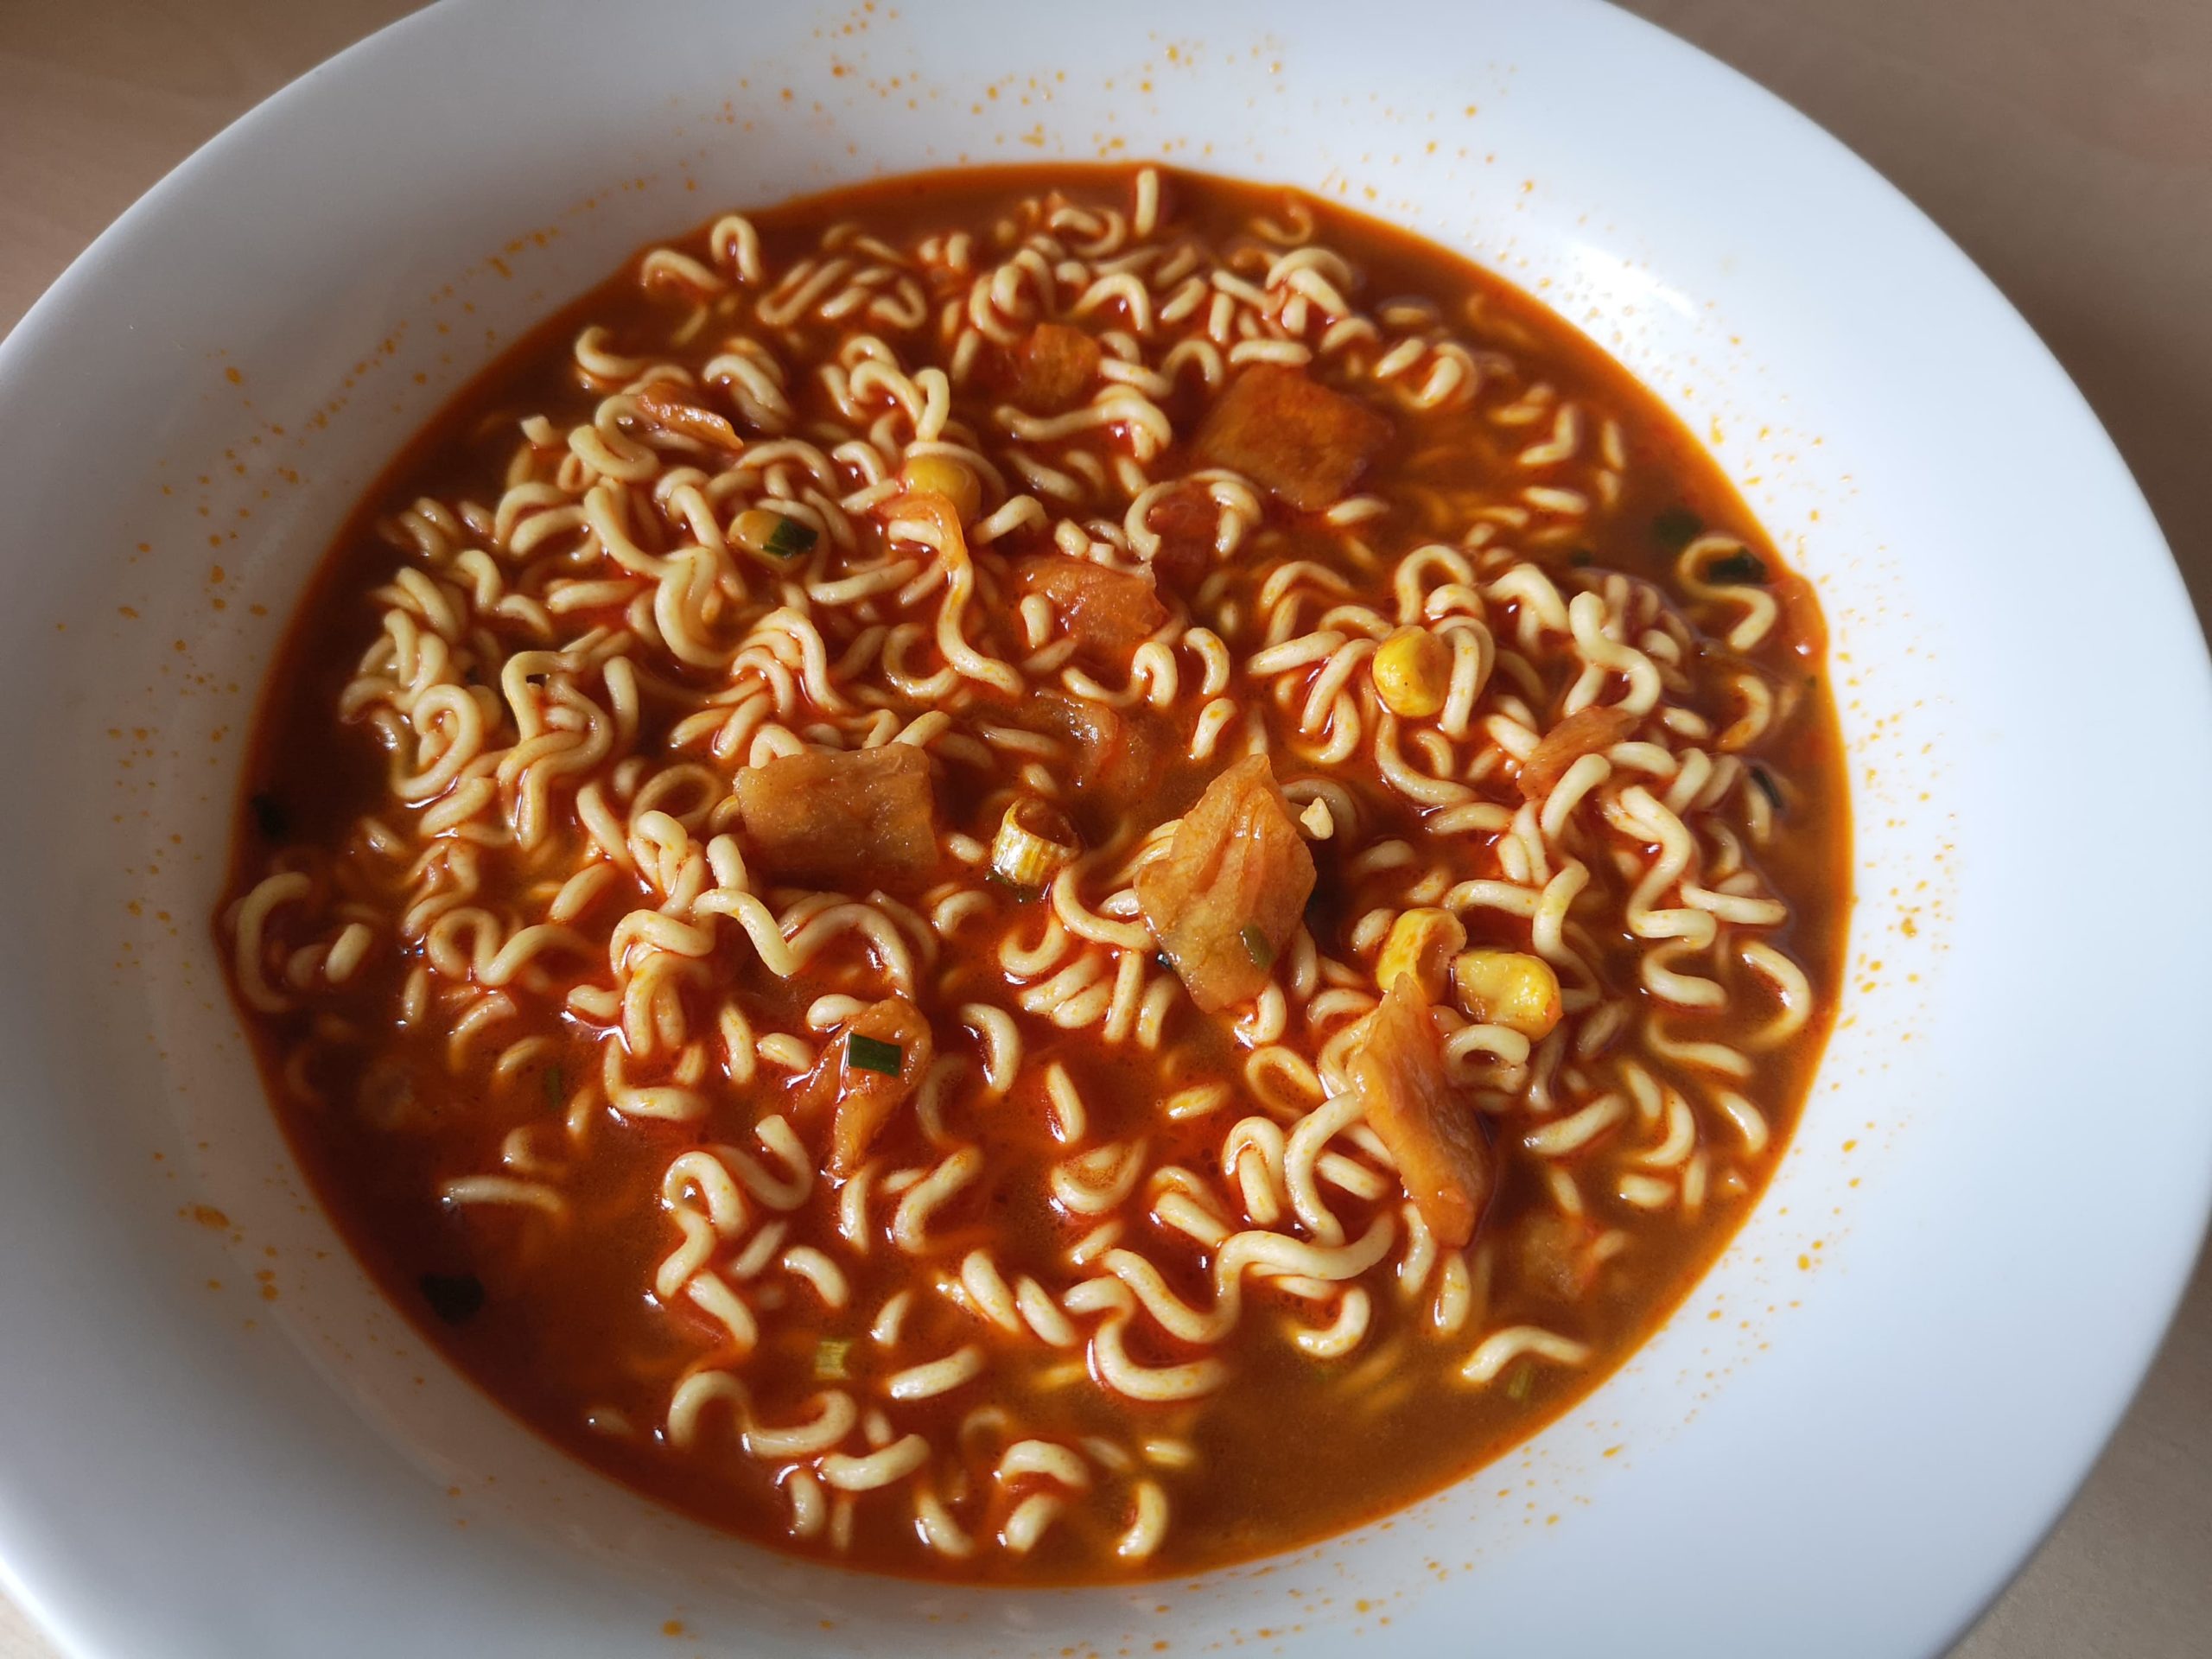 #1817: Unif Tangdaren Instant Noodles "Beef Taste Spicy Korean Style" (Update 2022)